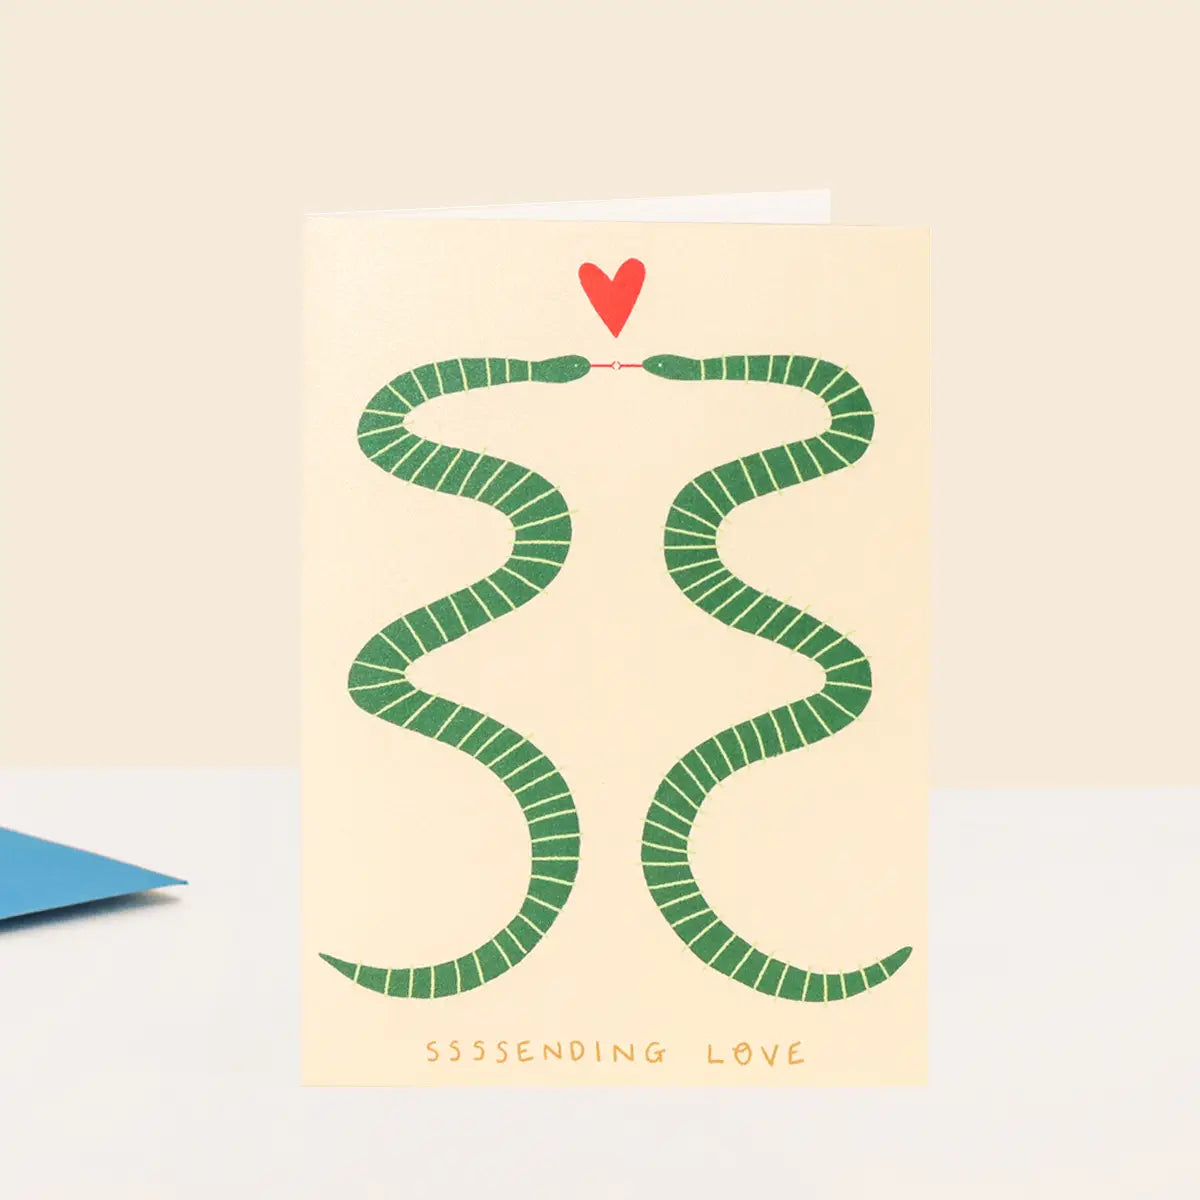 Sending love snakes